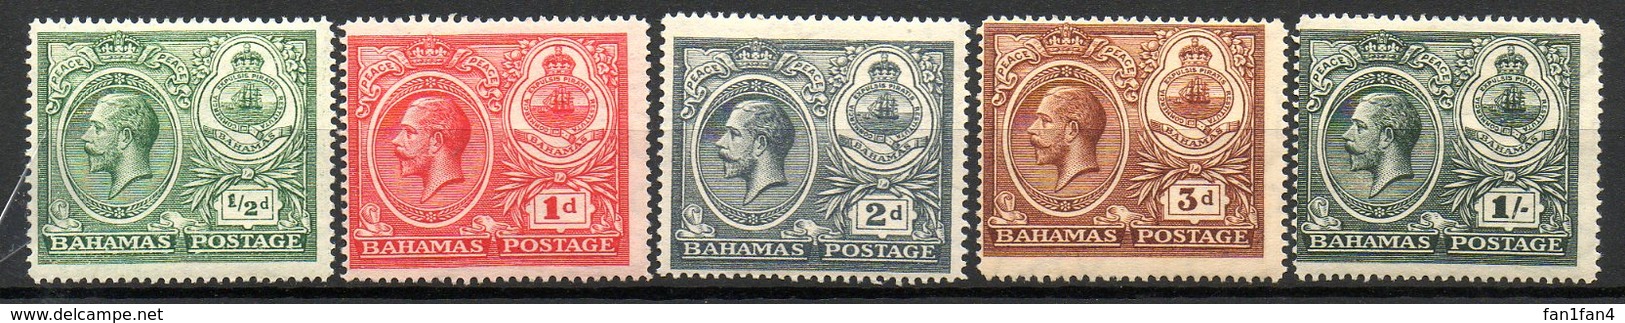 AMERIQUE CENTRALE - BAHAMAS - (Colonie Britannique) - 1920 - N° 70 à 74 - (Lot De 5 Valeurs Différentes) - Autres - Amérique